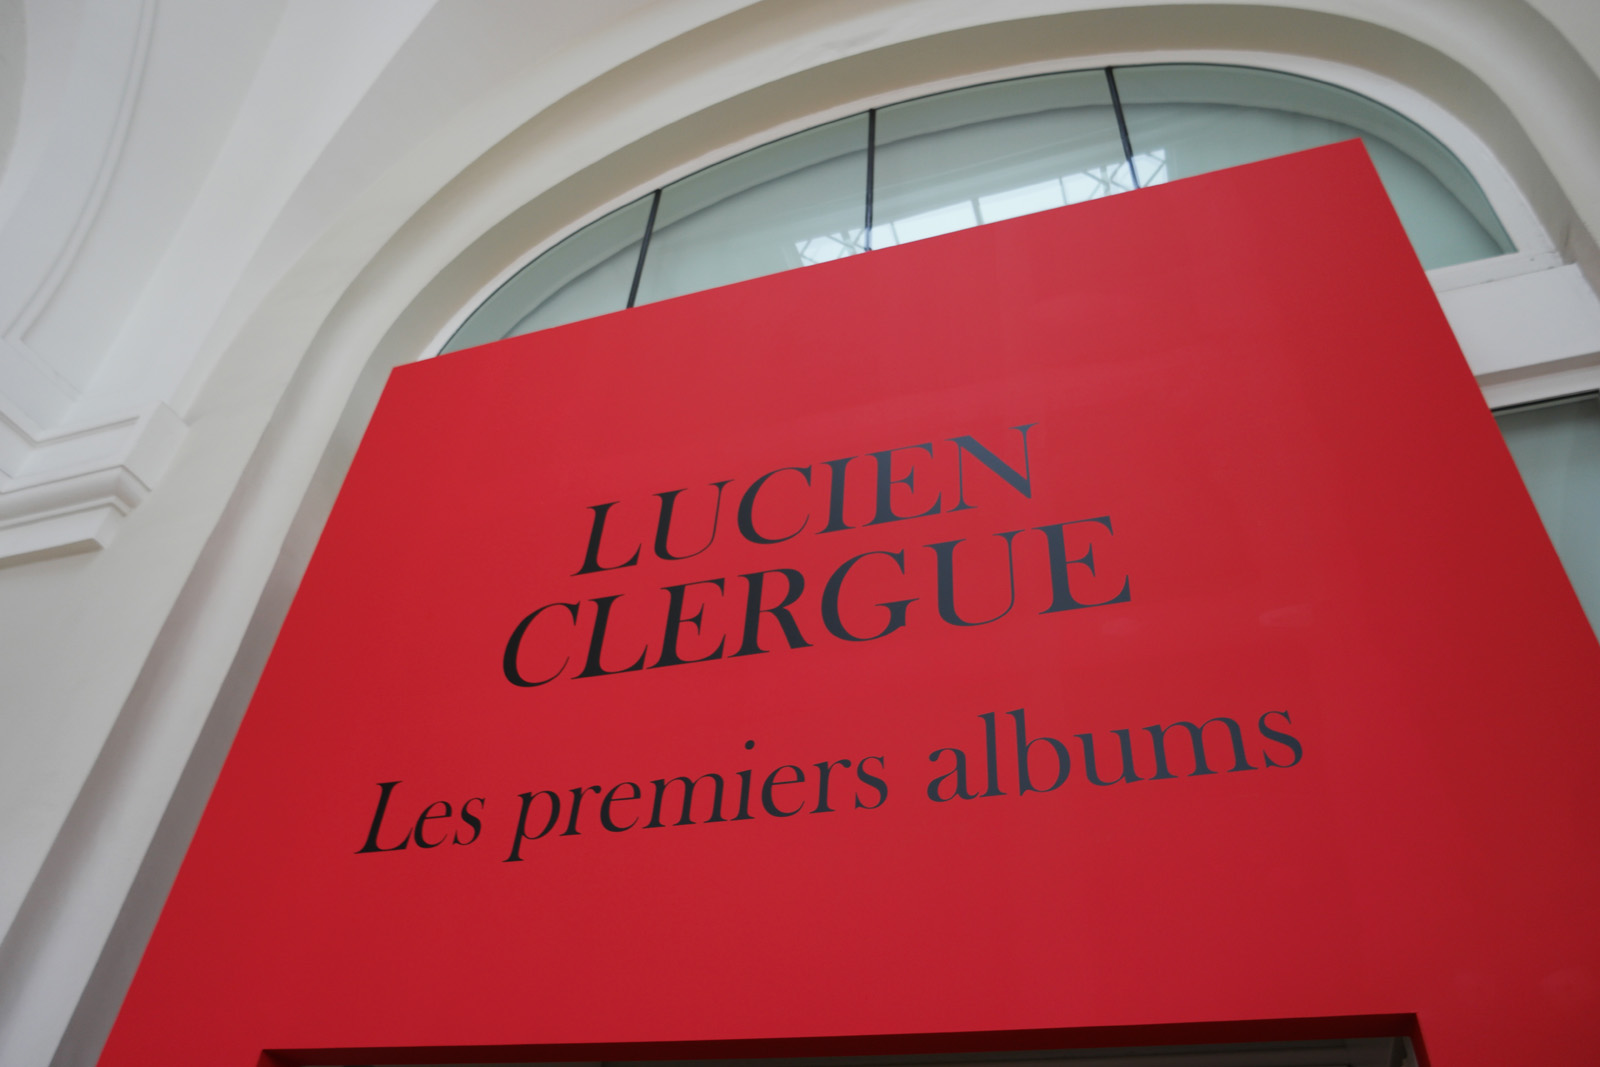 Entrée exposition photo Lucien Clergue Les premiers albums Grand Palais galeries nationales poret H photo united states of paris blog